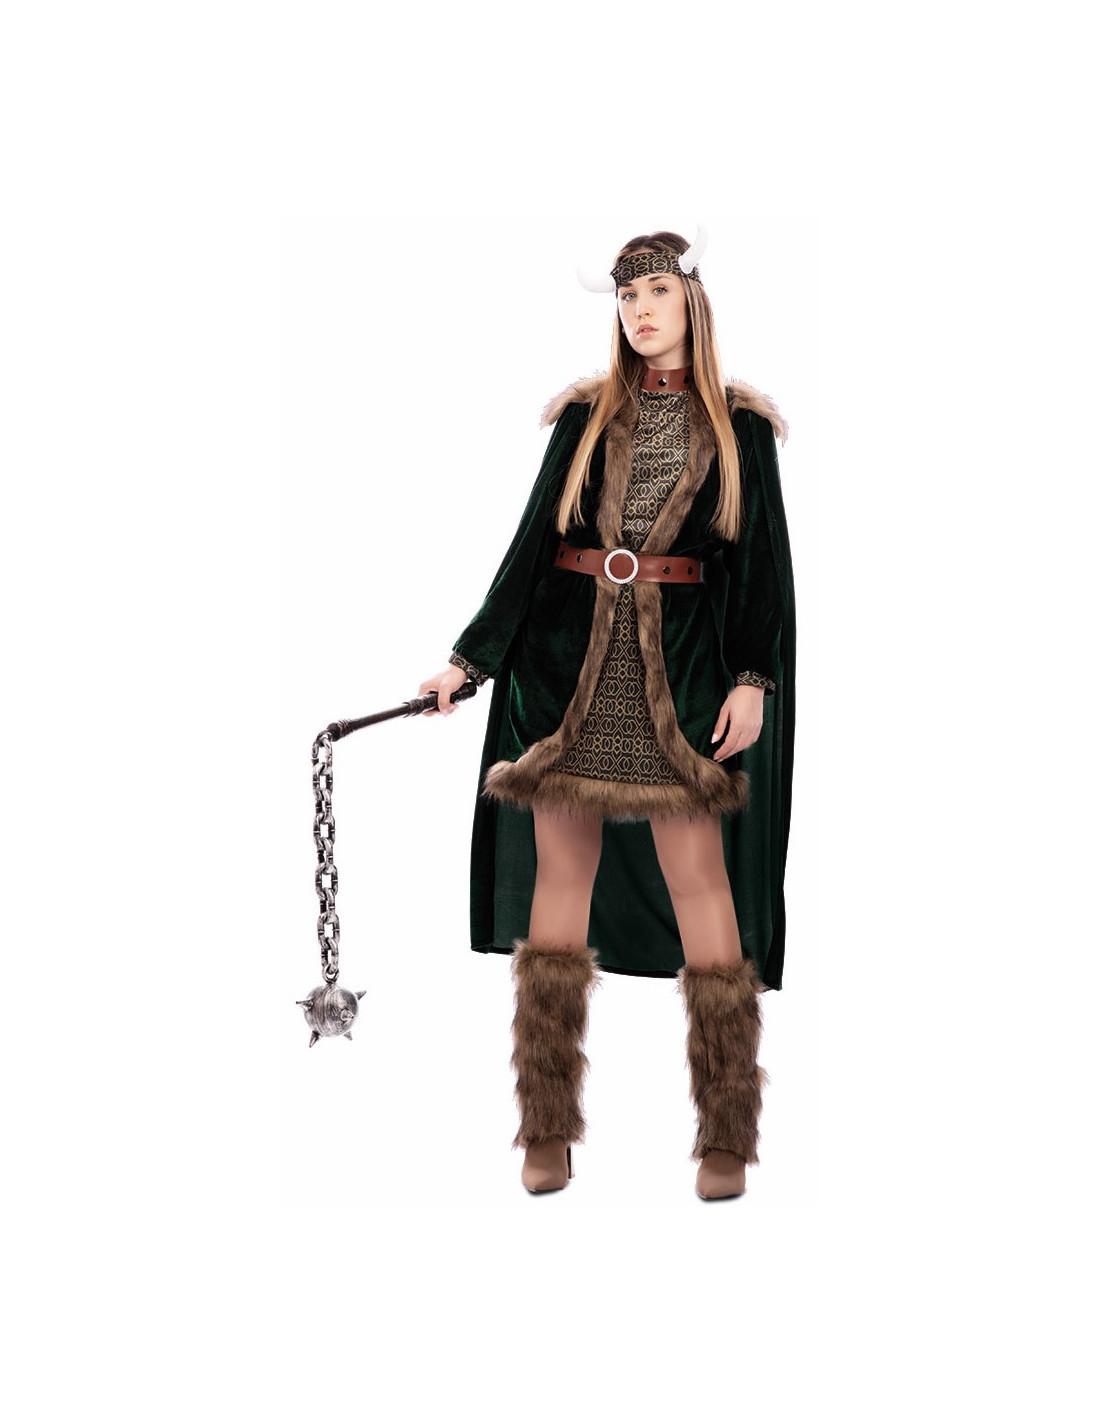 9 ideas de Disfraz de vikingo mujer  disfraz de vikingo mujer, disfraz  vikingo, traje de vikingo